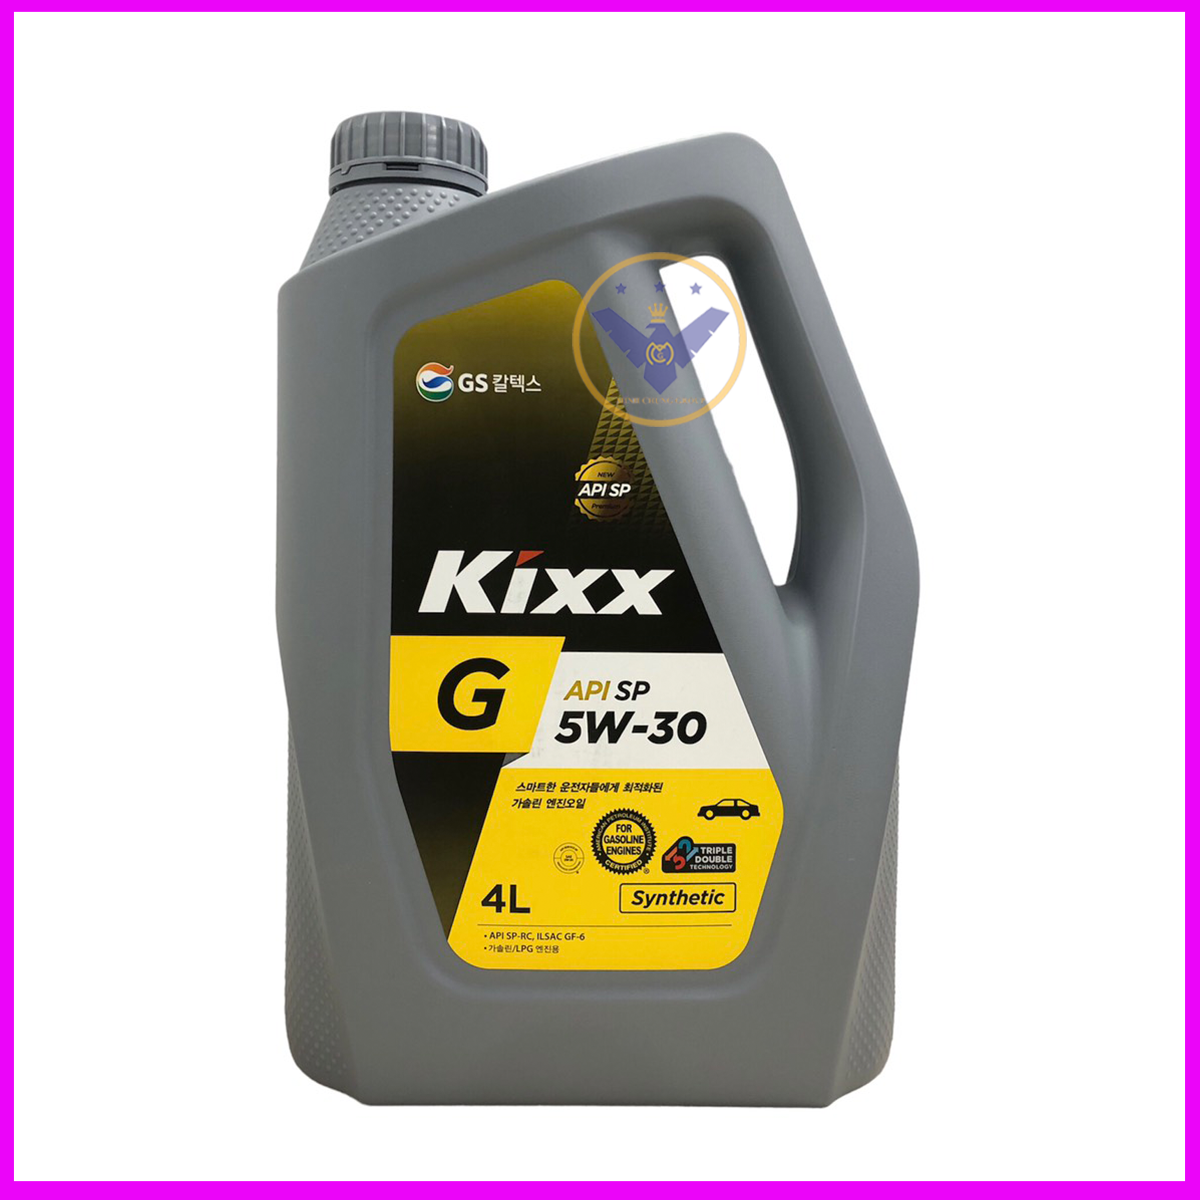 Dầu nhớt ô tô tổng hợp Kixx G API SP 5W30 nhập Hàn Quốc can 4L